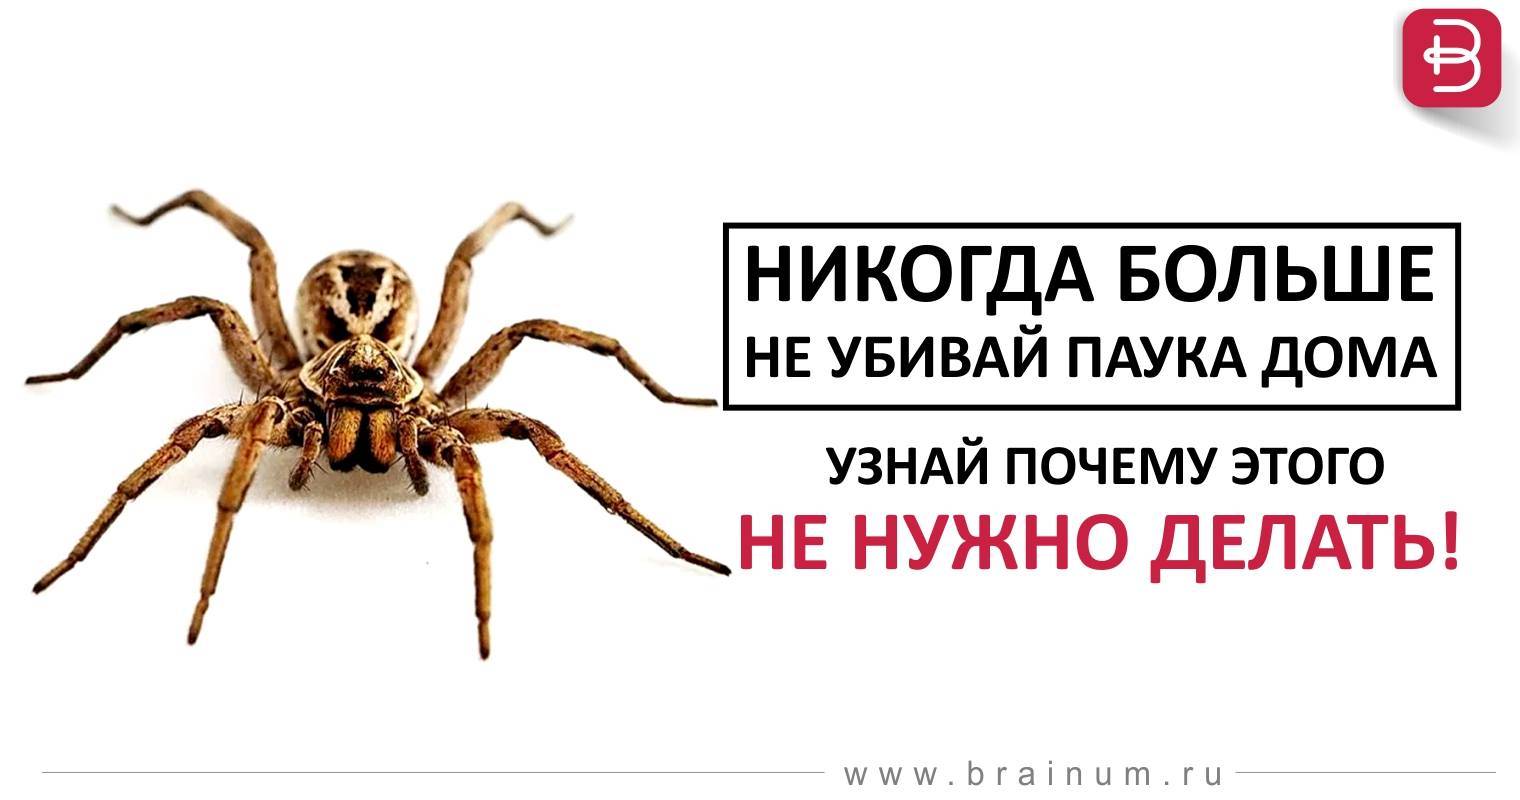 Можно ли убивать пауков в доме или в квартире?